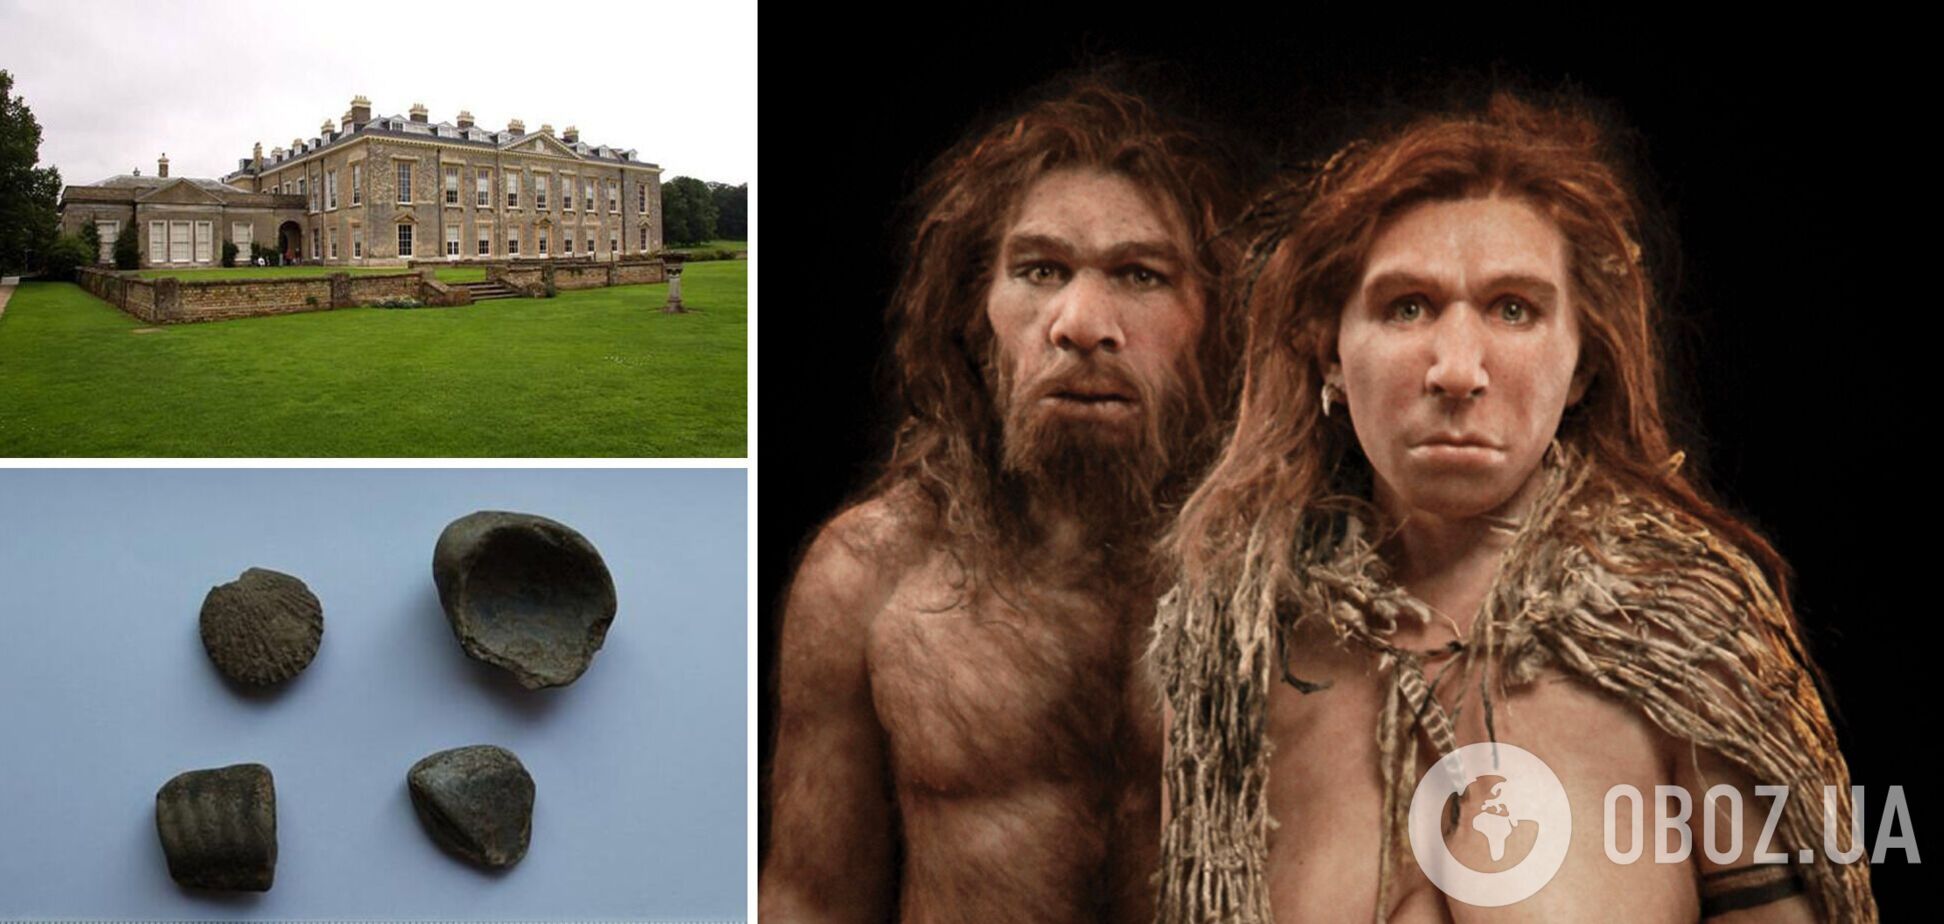 В фамильном поместье принцессы Дианы обнаружили артефакты неандертальцев, которым 40 тыс. лет. Фото